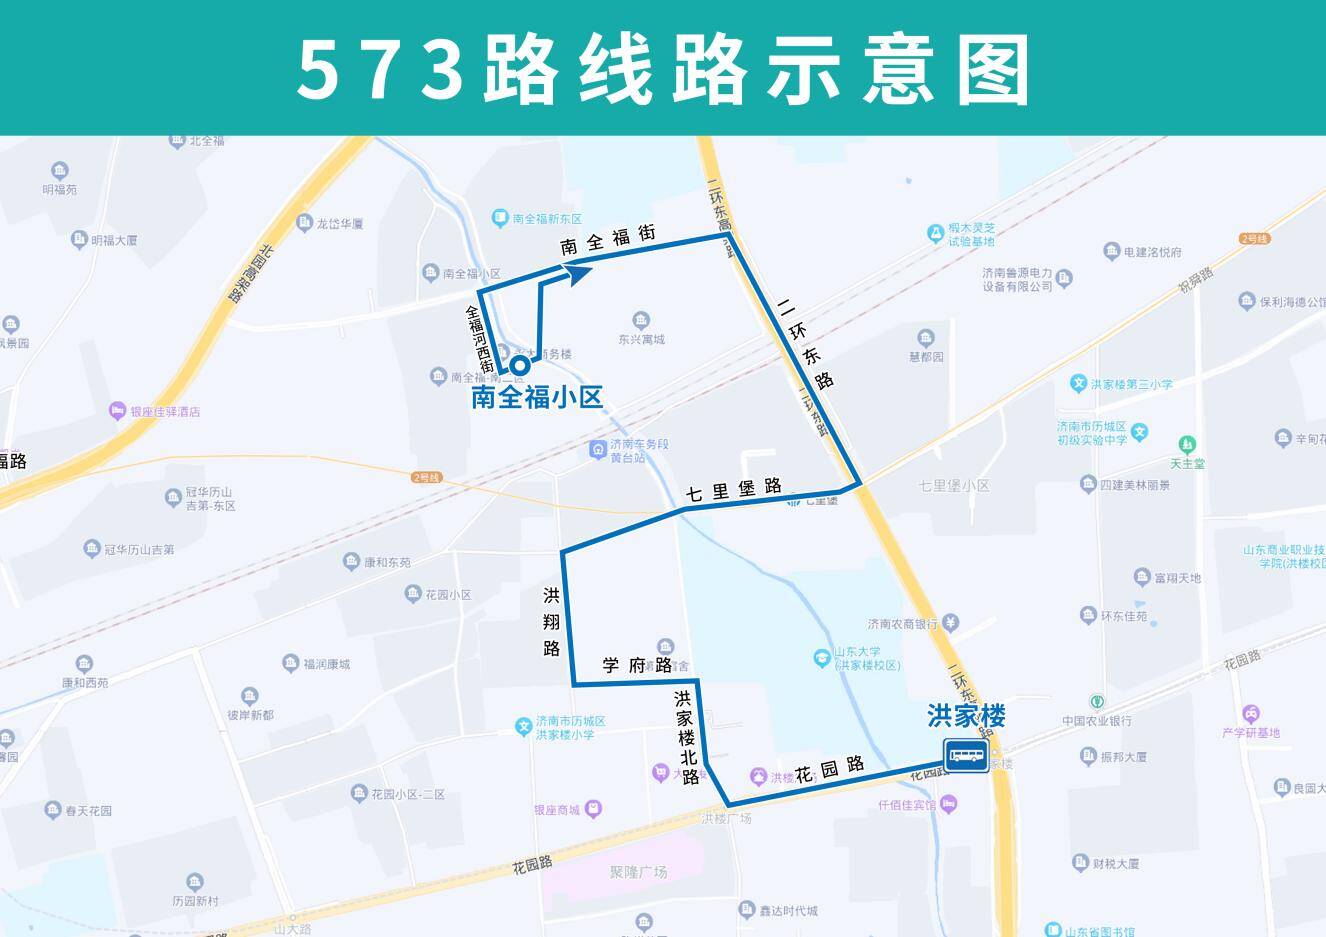 又一条小巷公交来了！3月23日起，济南公交开通试运行573路